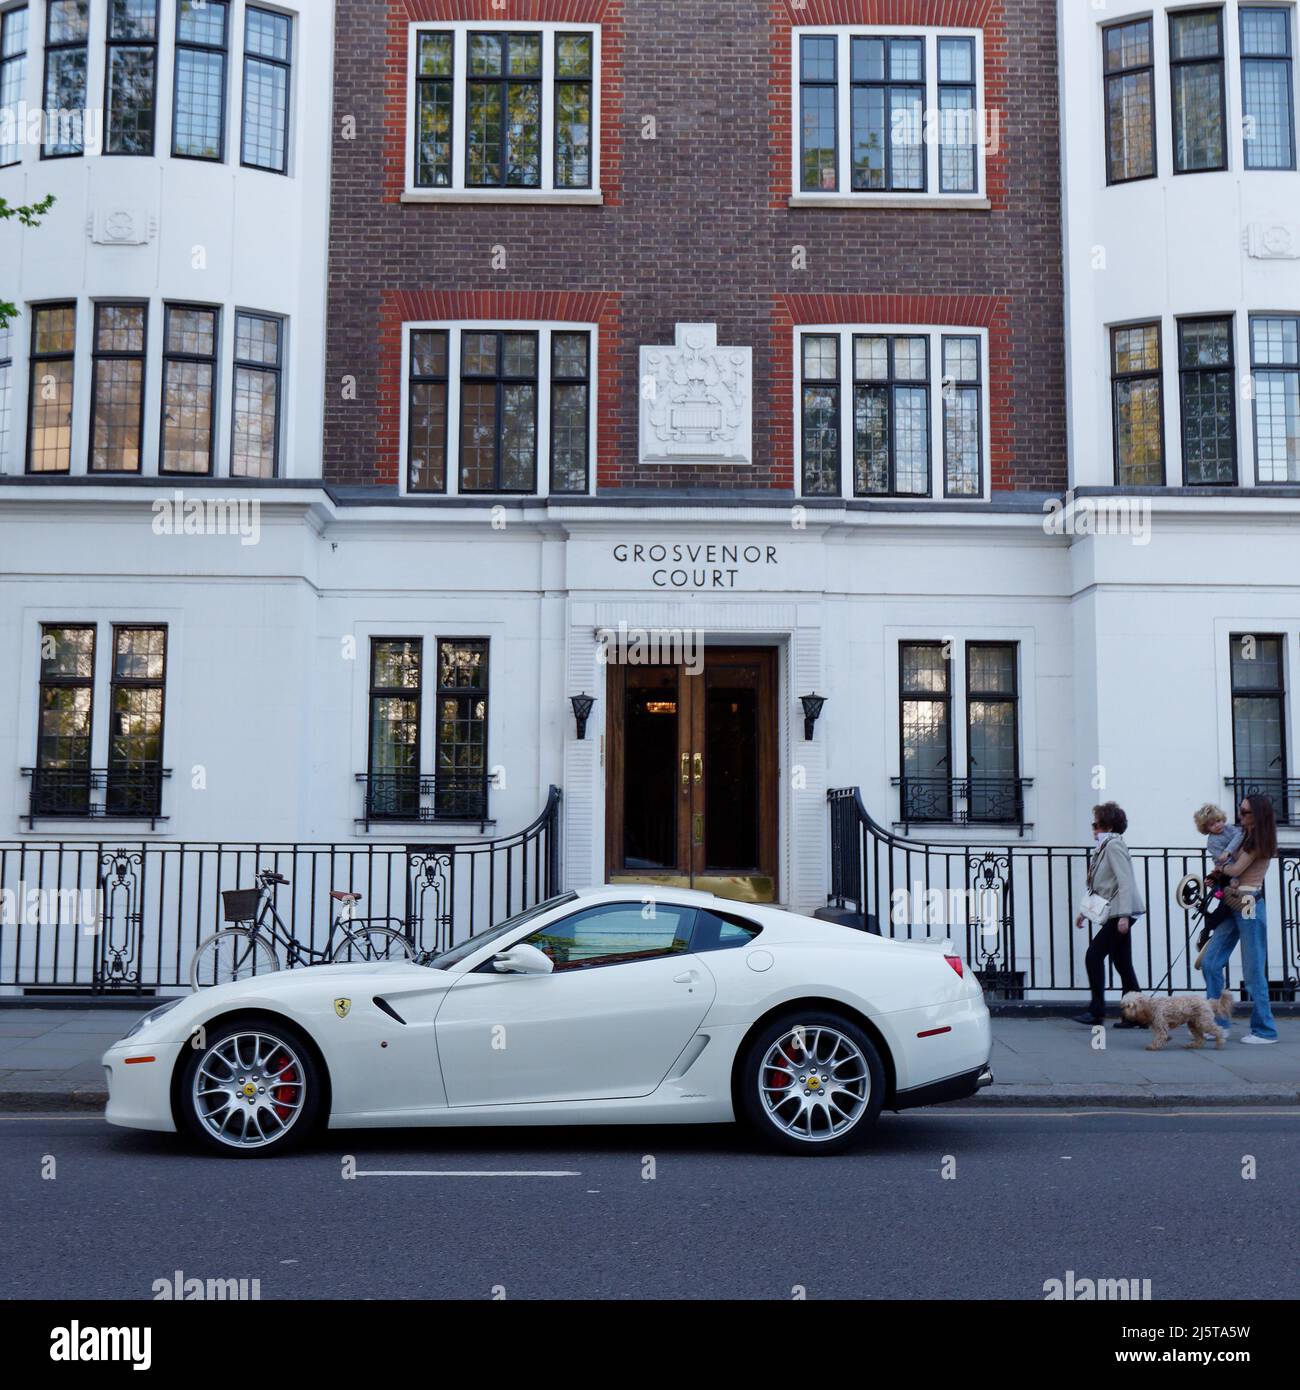 Londres, Grand Londres, Angleterre, avril 16 2022 : voiture Porsche blanche à l'extérieur de Grosvenor court sur Sloane Street dans la région de Kensington et Chelsea. Banque D'Images